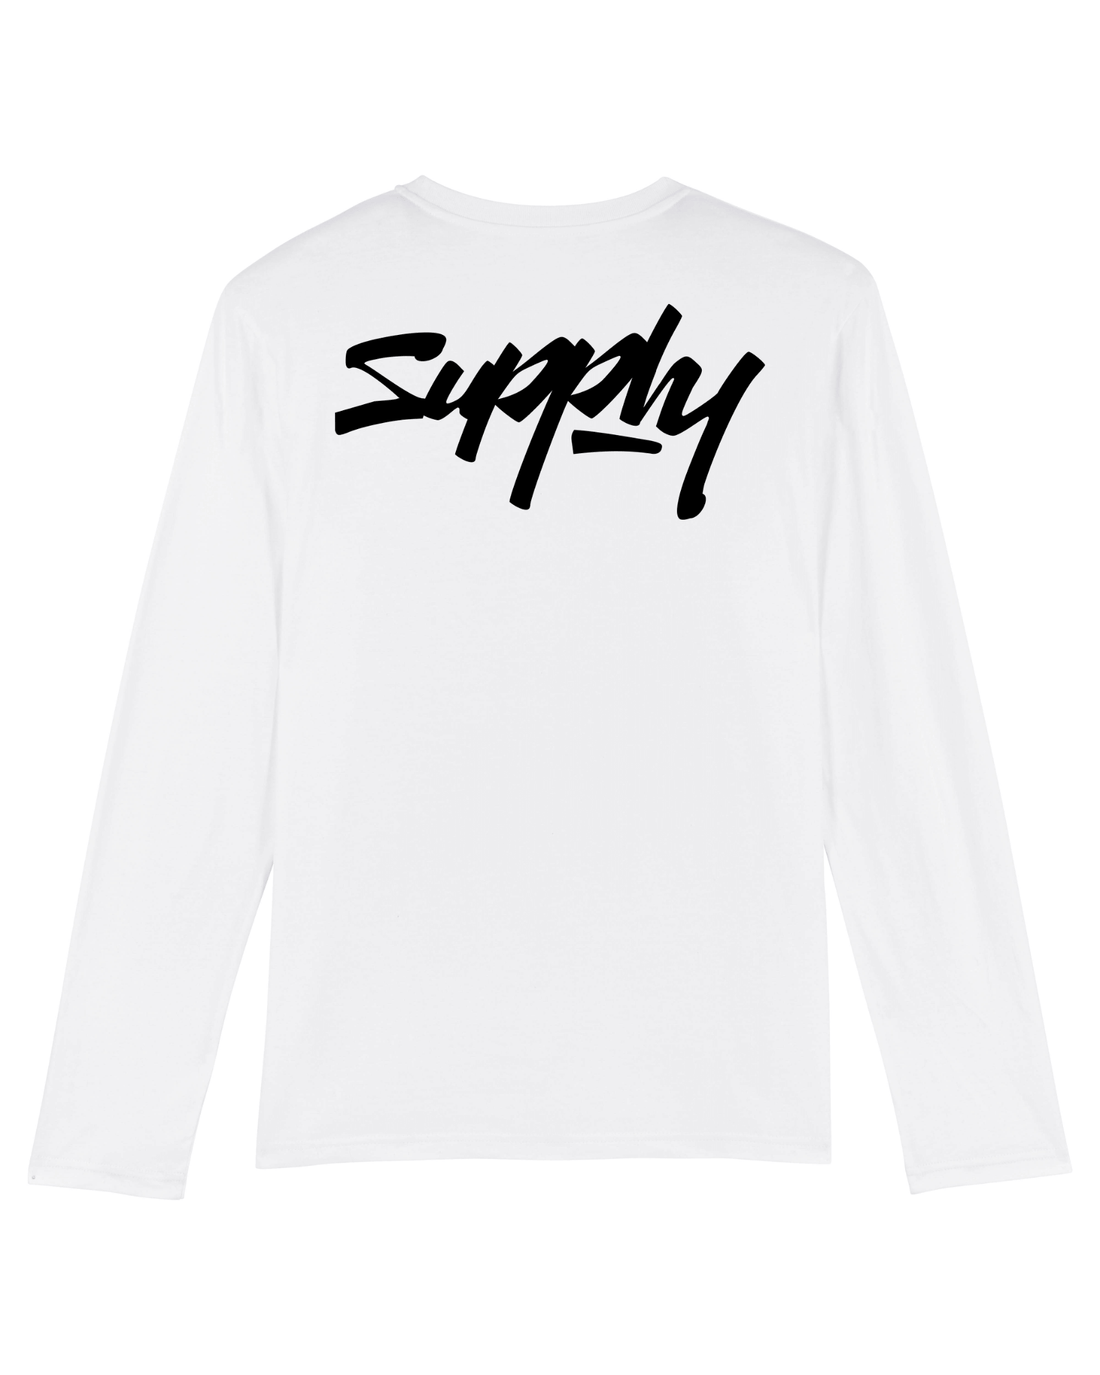 White Skater Long Sleeve, Supply V2 Back Print